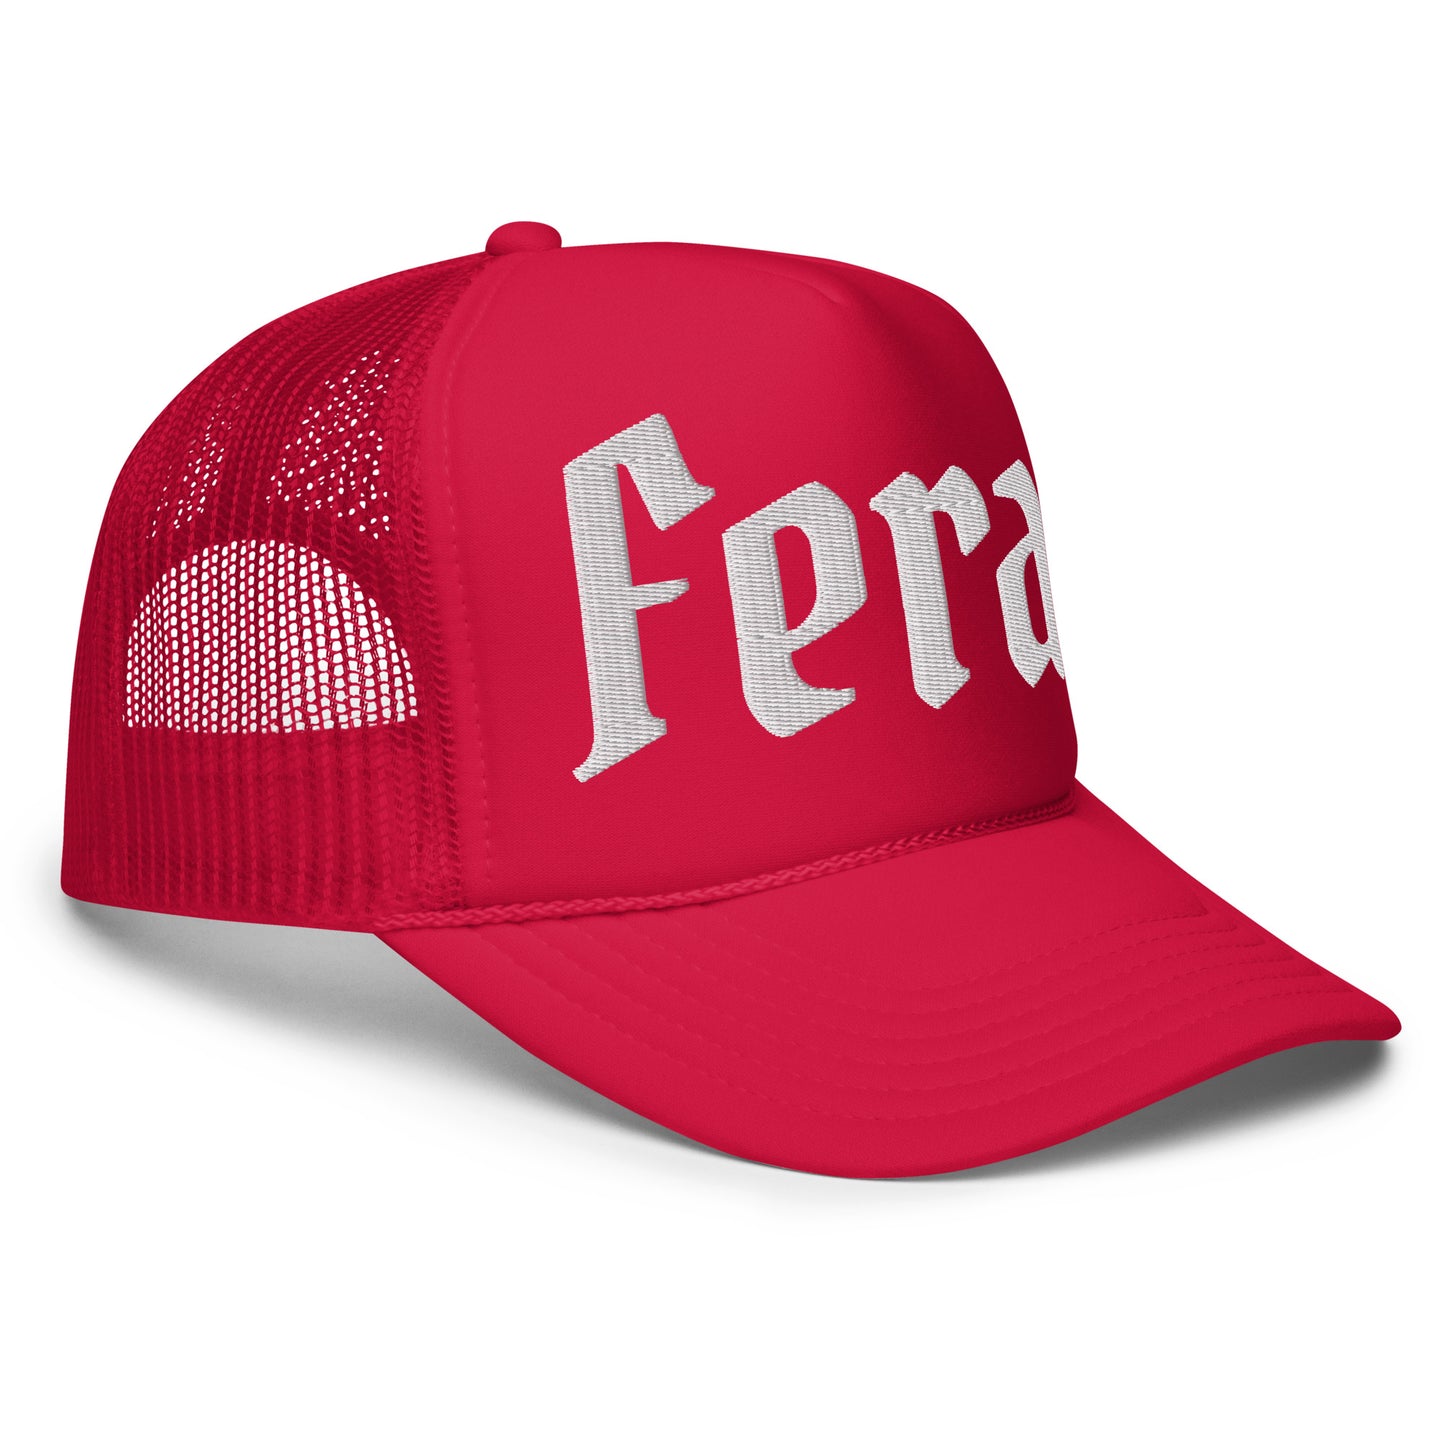 Feral Unisex Foam trucker hat